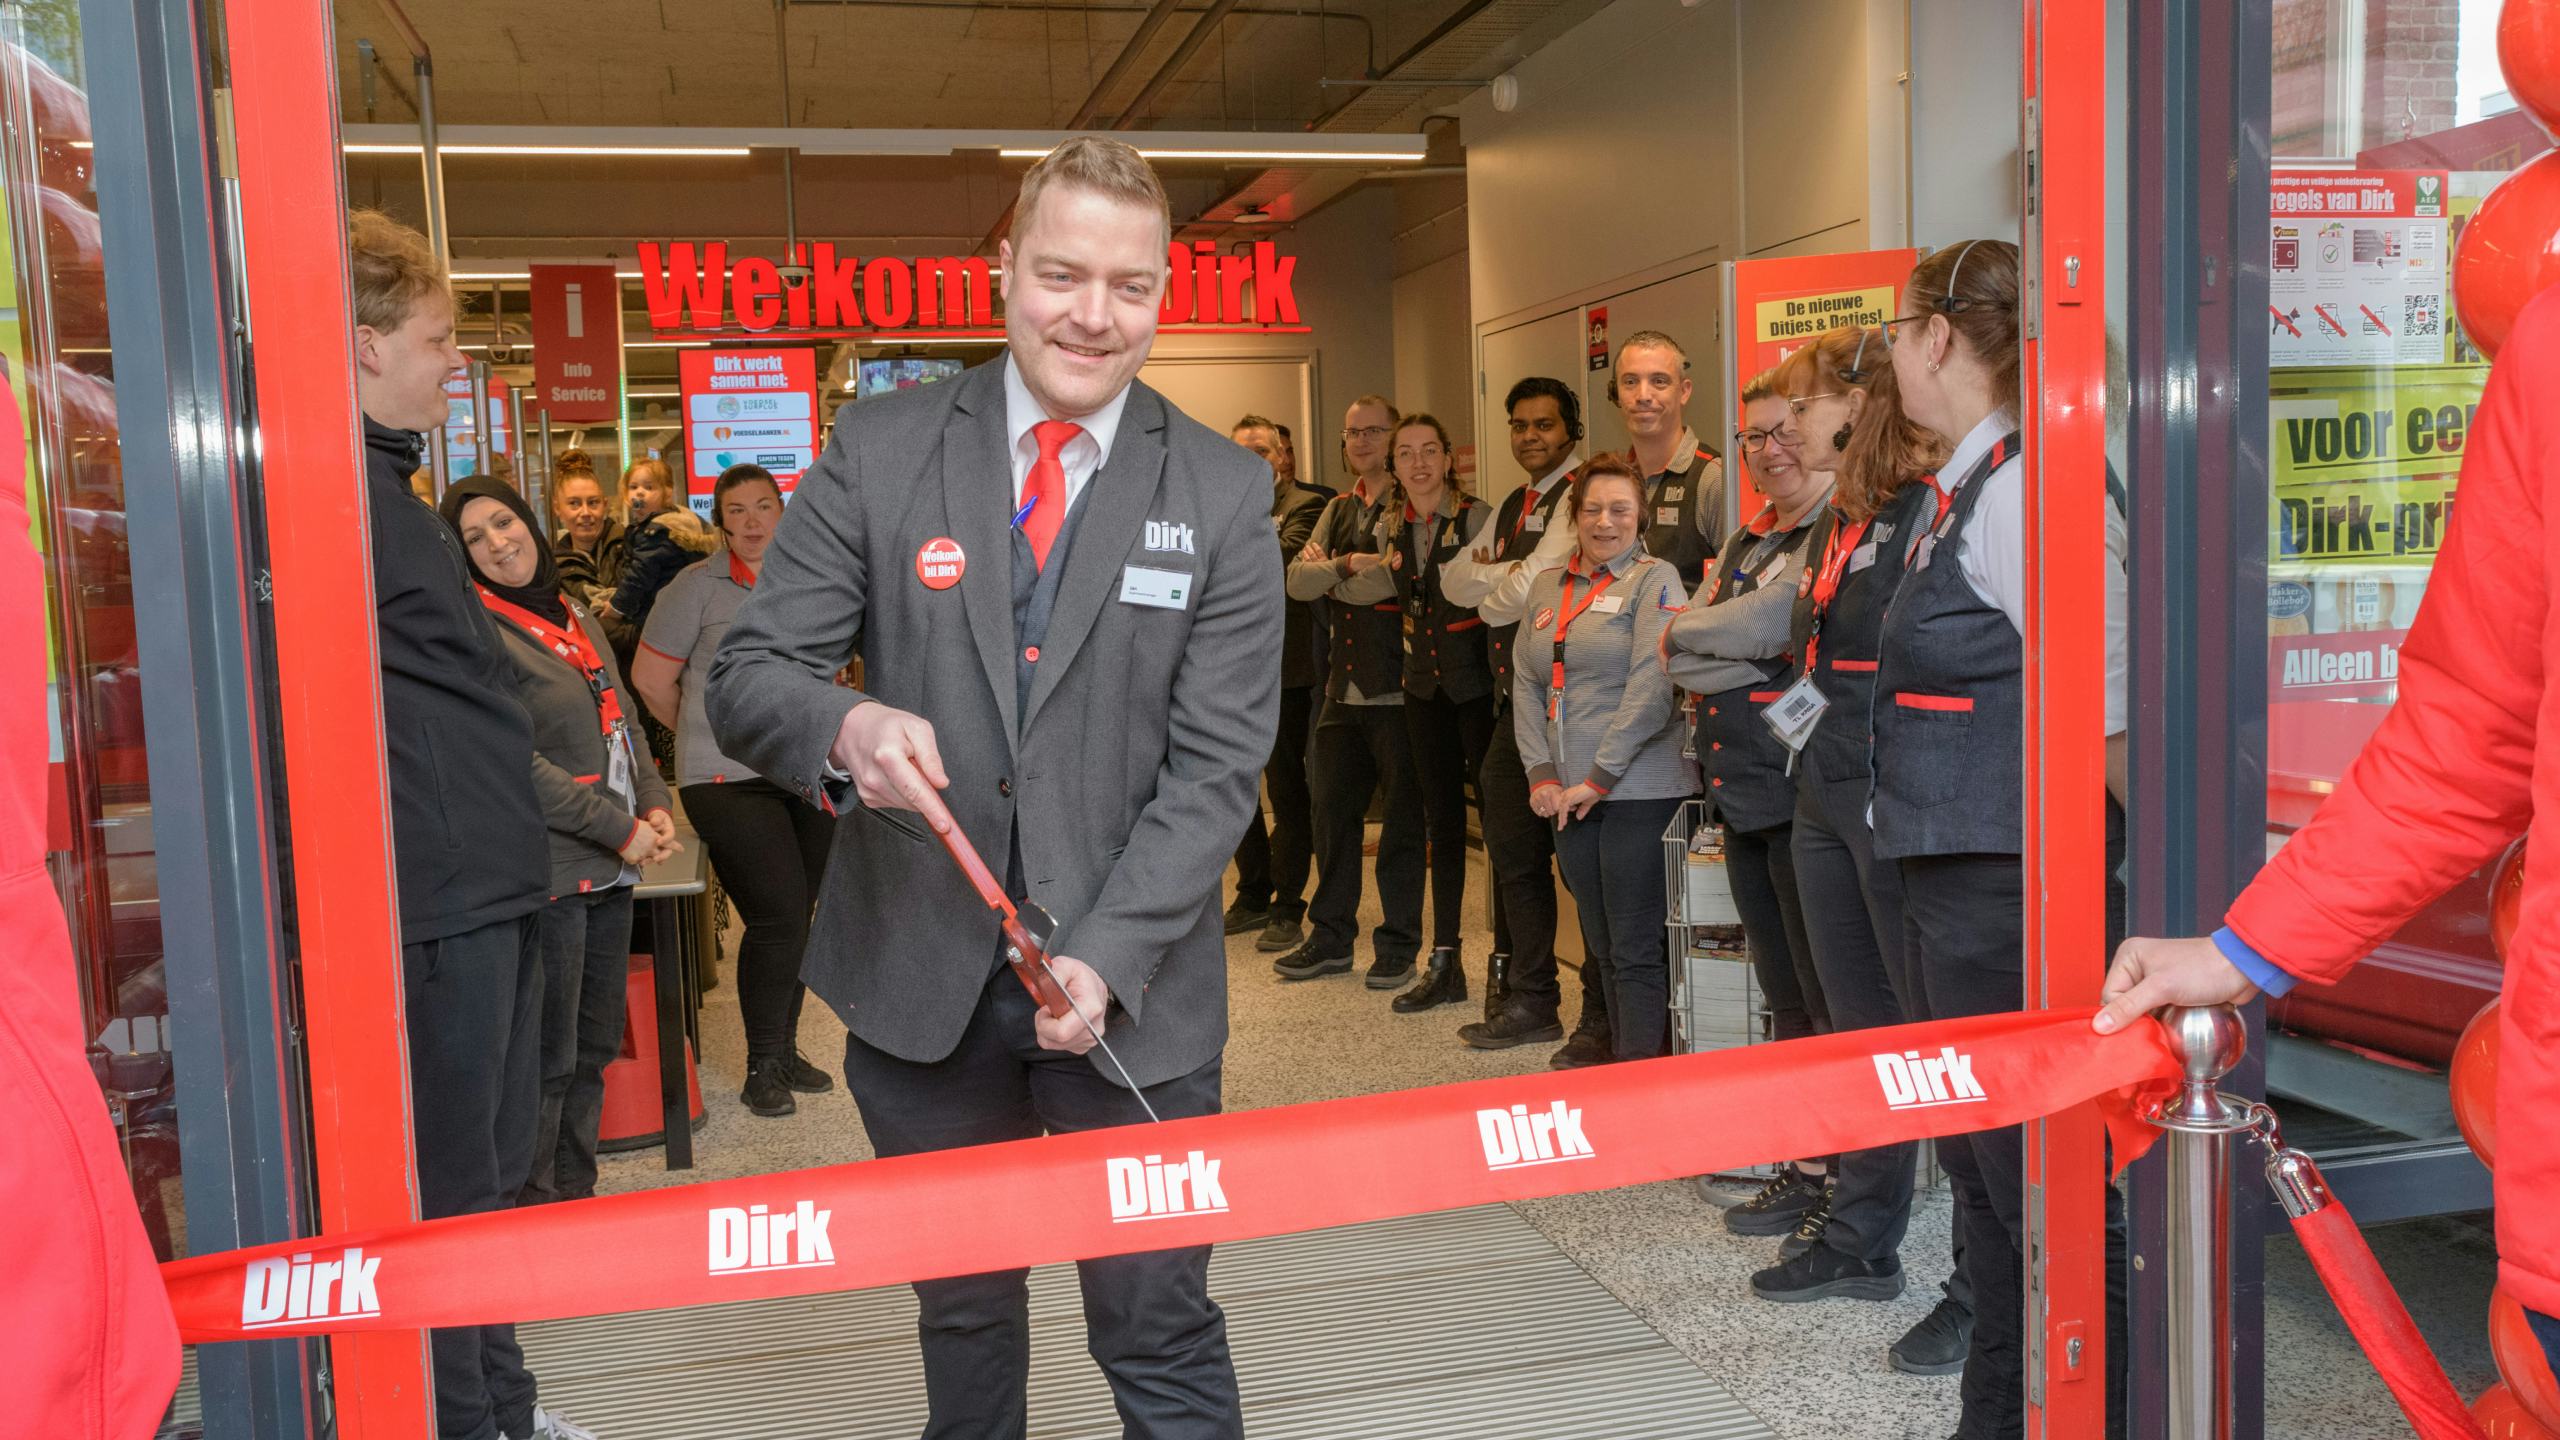 De heropening van Dirk in Wassenaar. Foto: Dirk van den Broek